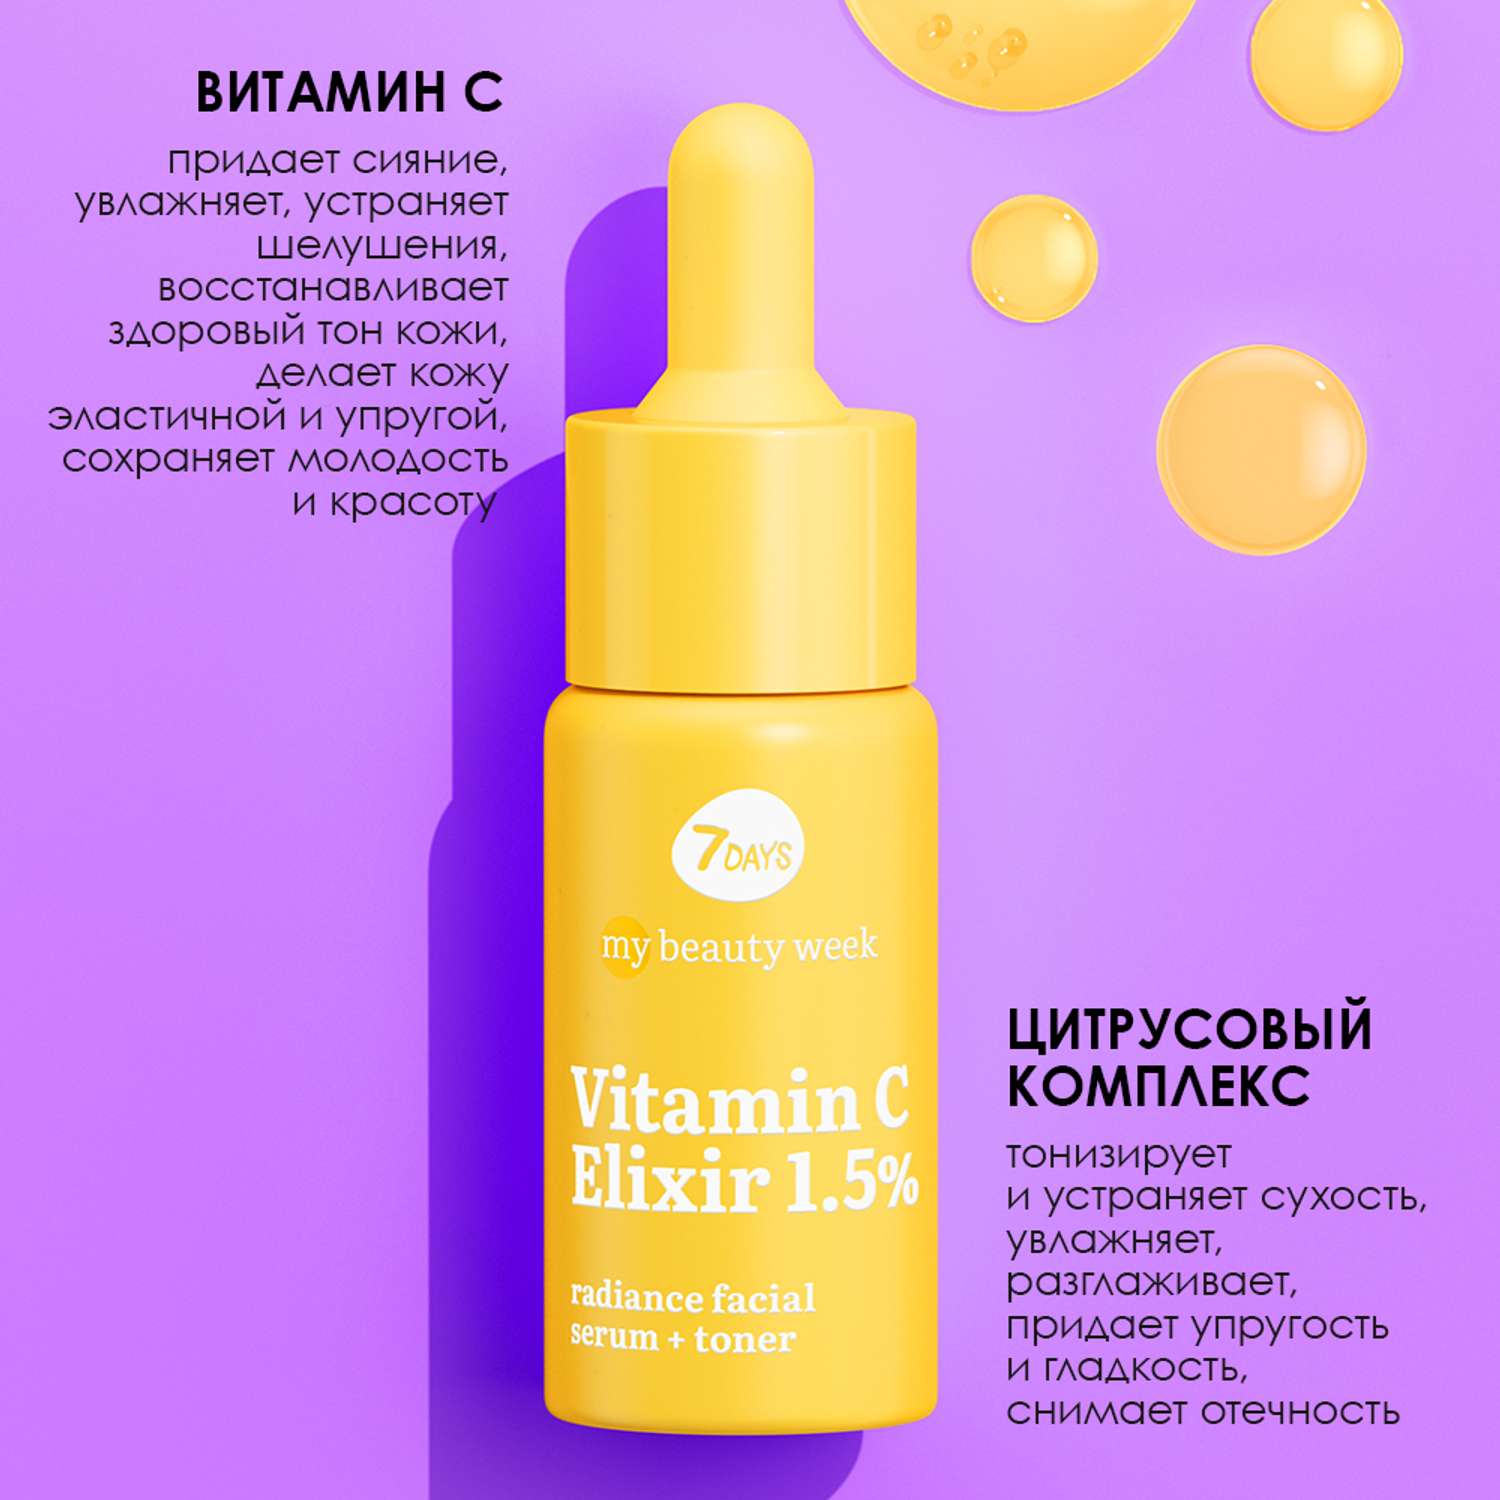 Сыворотка для лица 7DAYS Vitamin С elixir 1.5% придающая сияние коже - фото 6